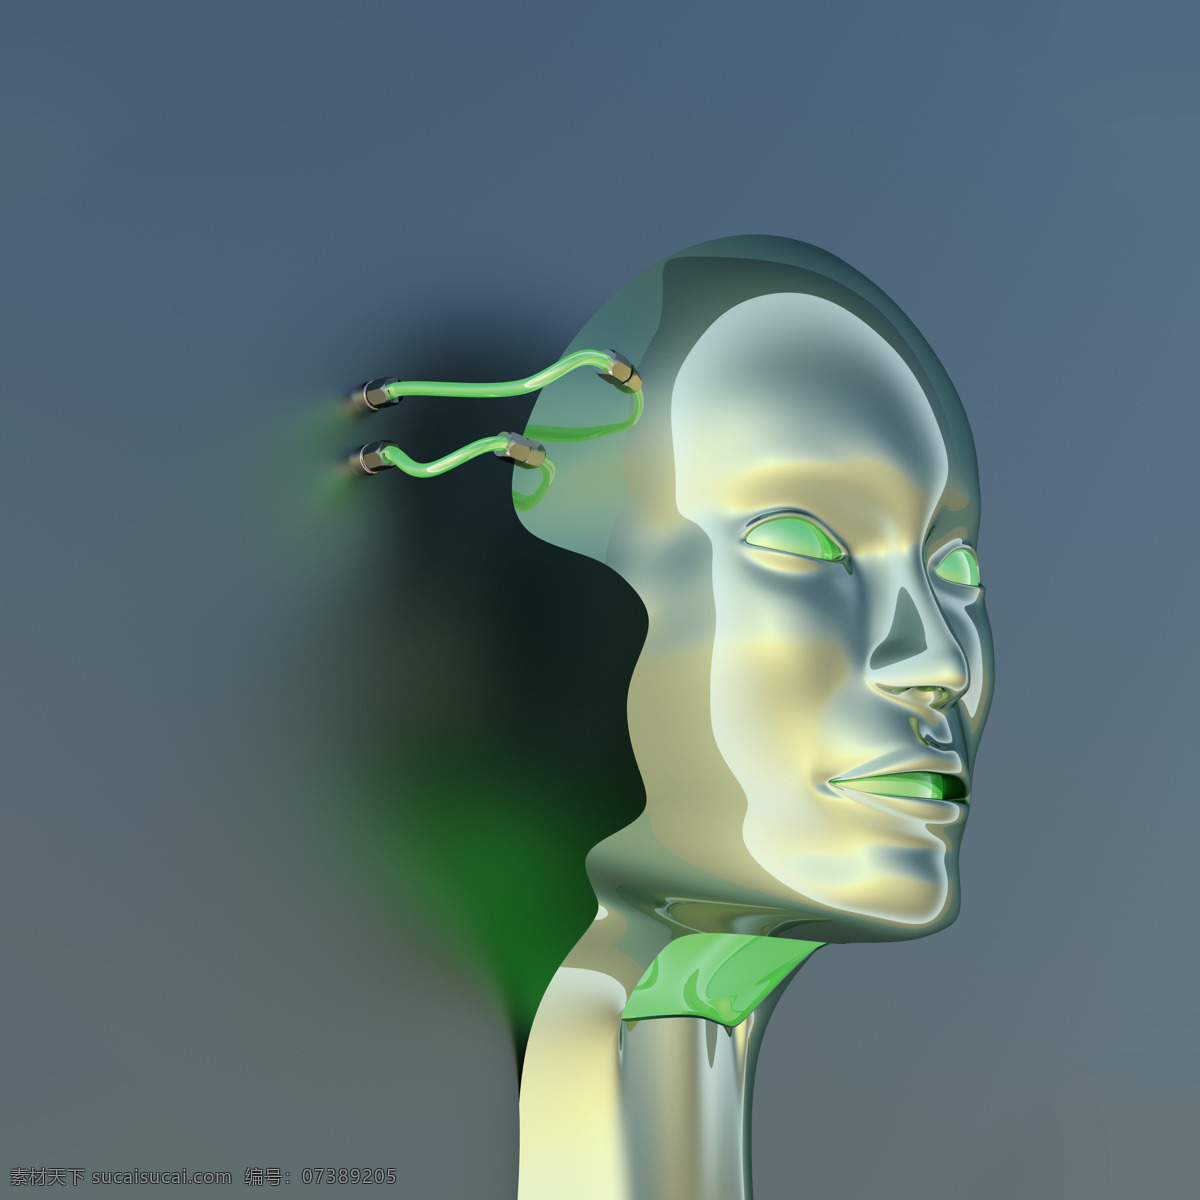 机器人 头部 管子 科技 其他人物 人物图片